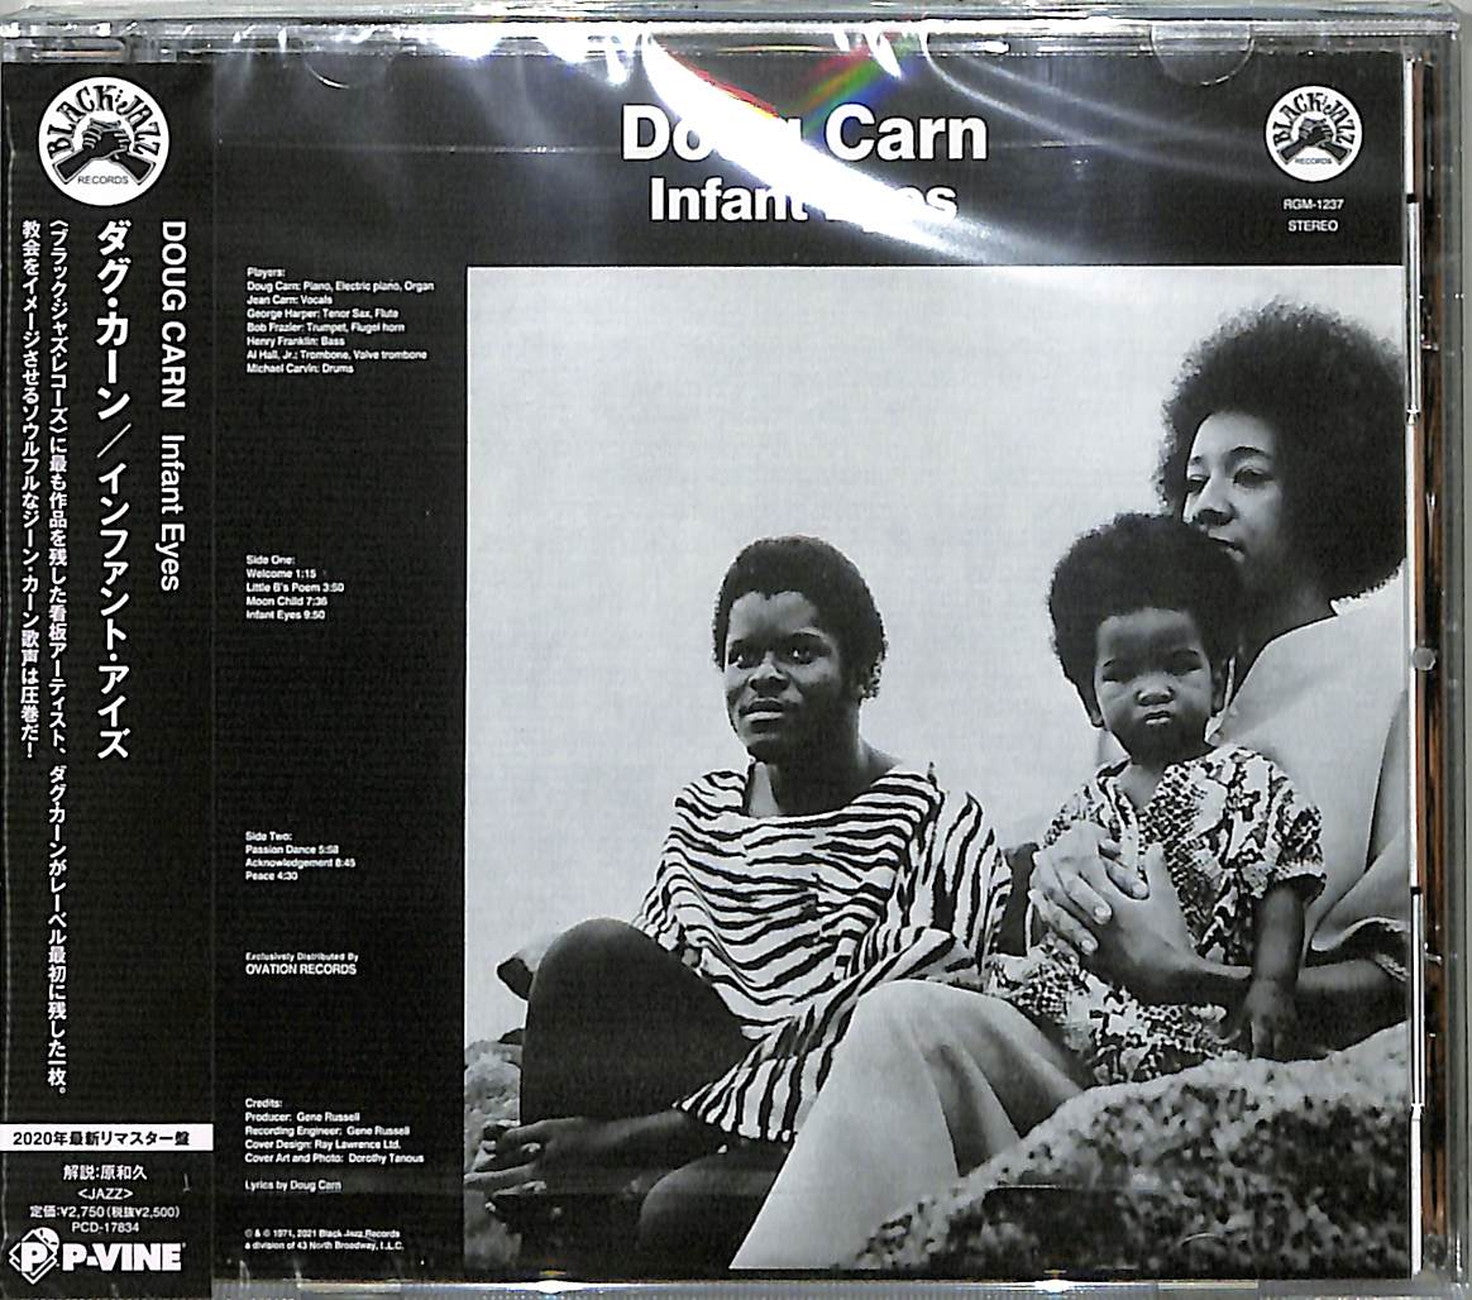 Doug Carn - Infant Eyes - Import CD – CDs Vinyl Japan Store